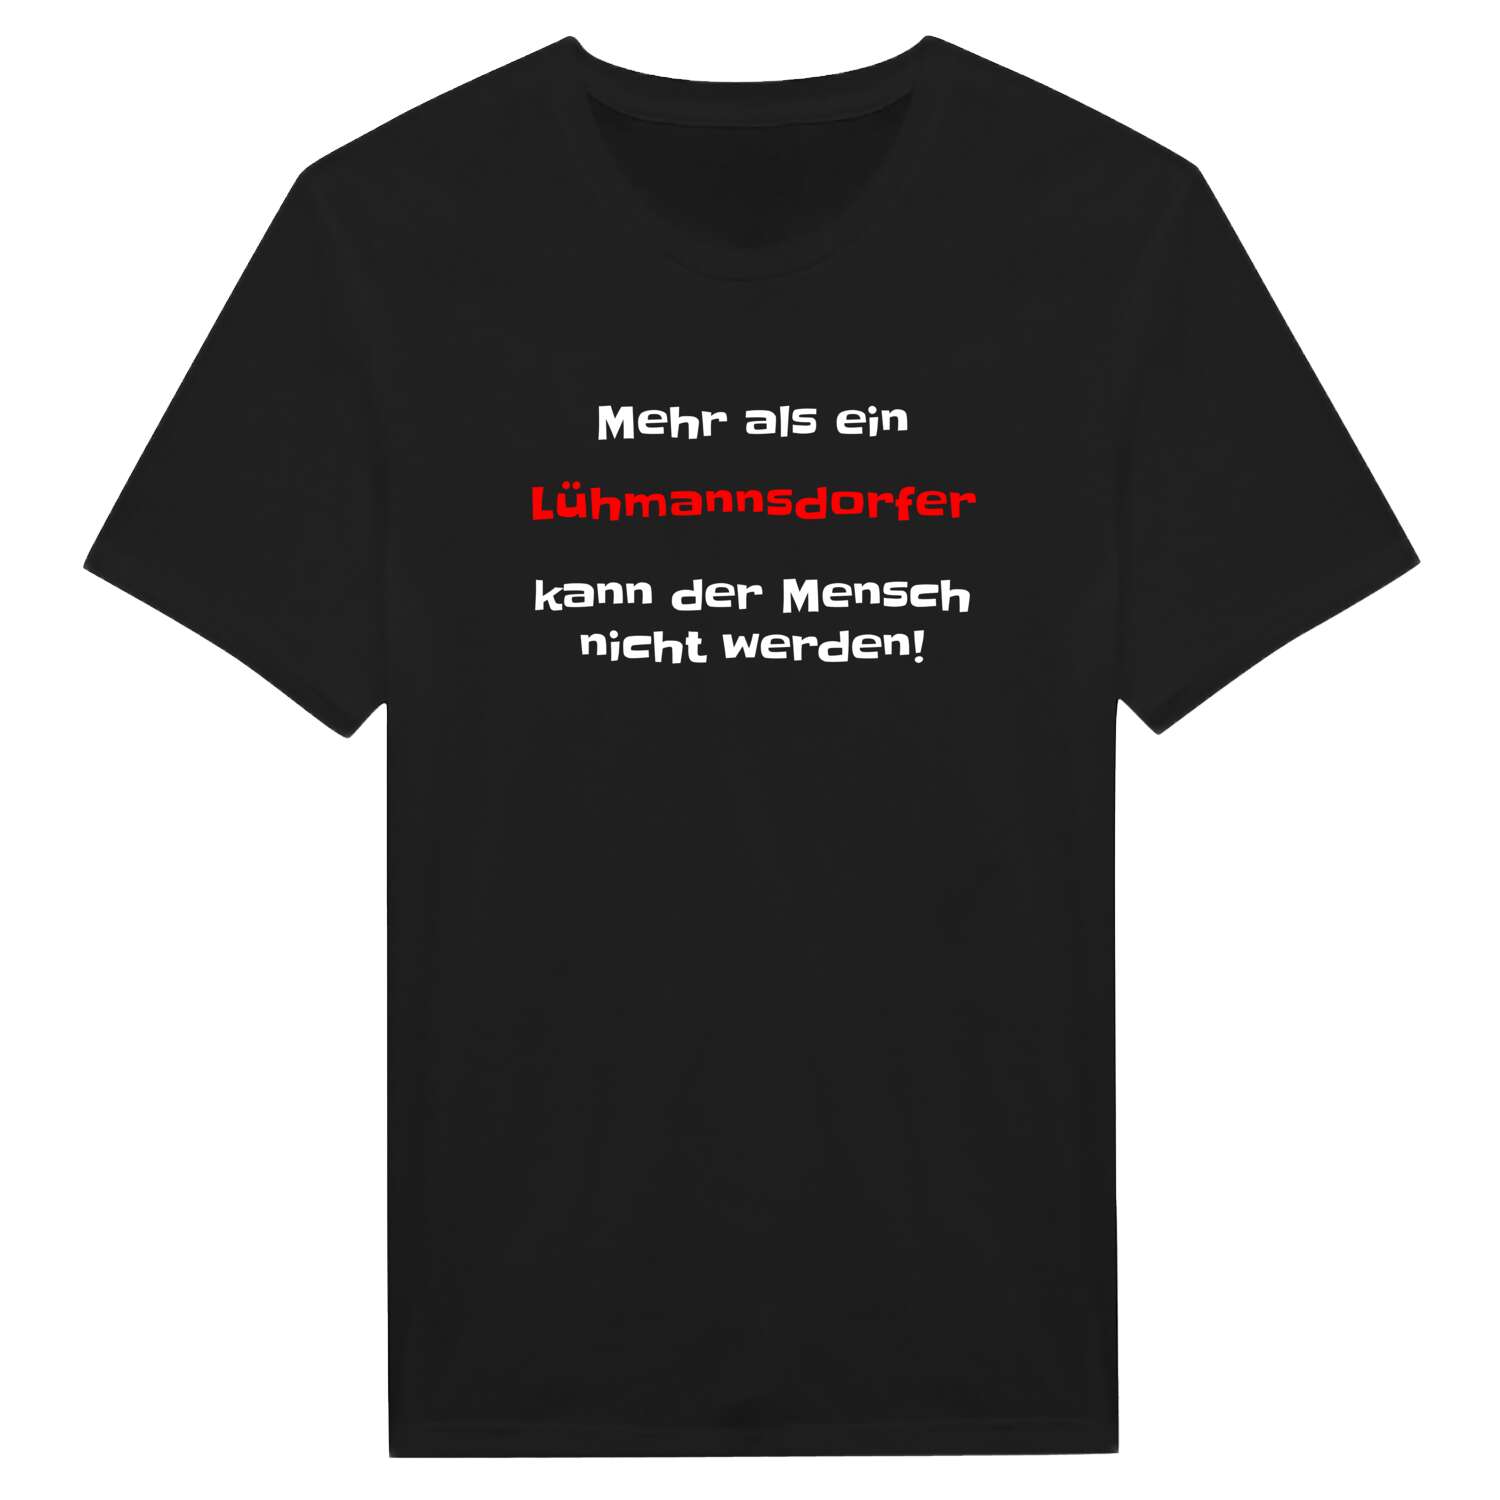 Lühmannsdorf T-Shirt »Mehr als ein«